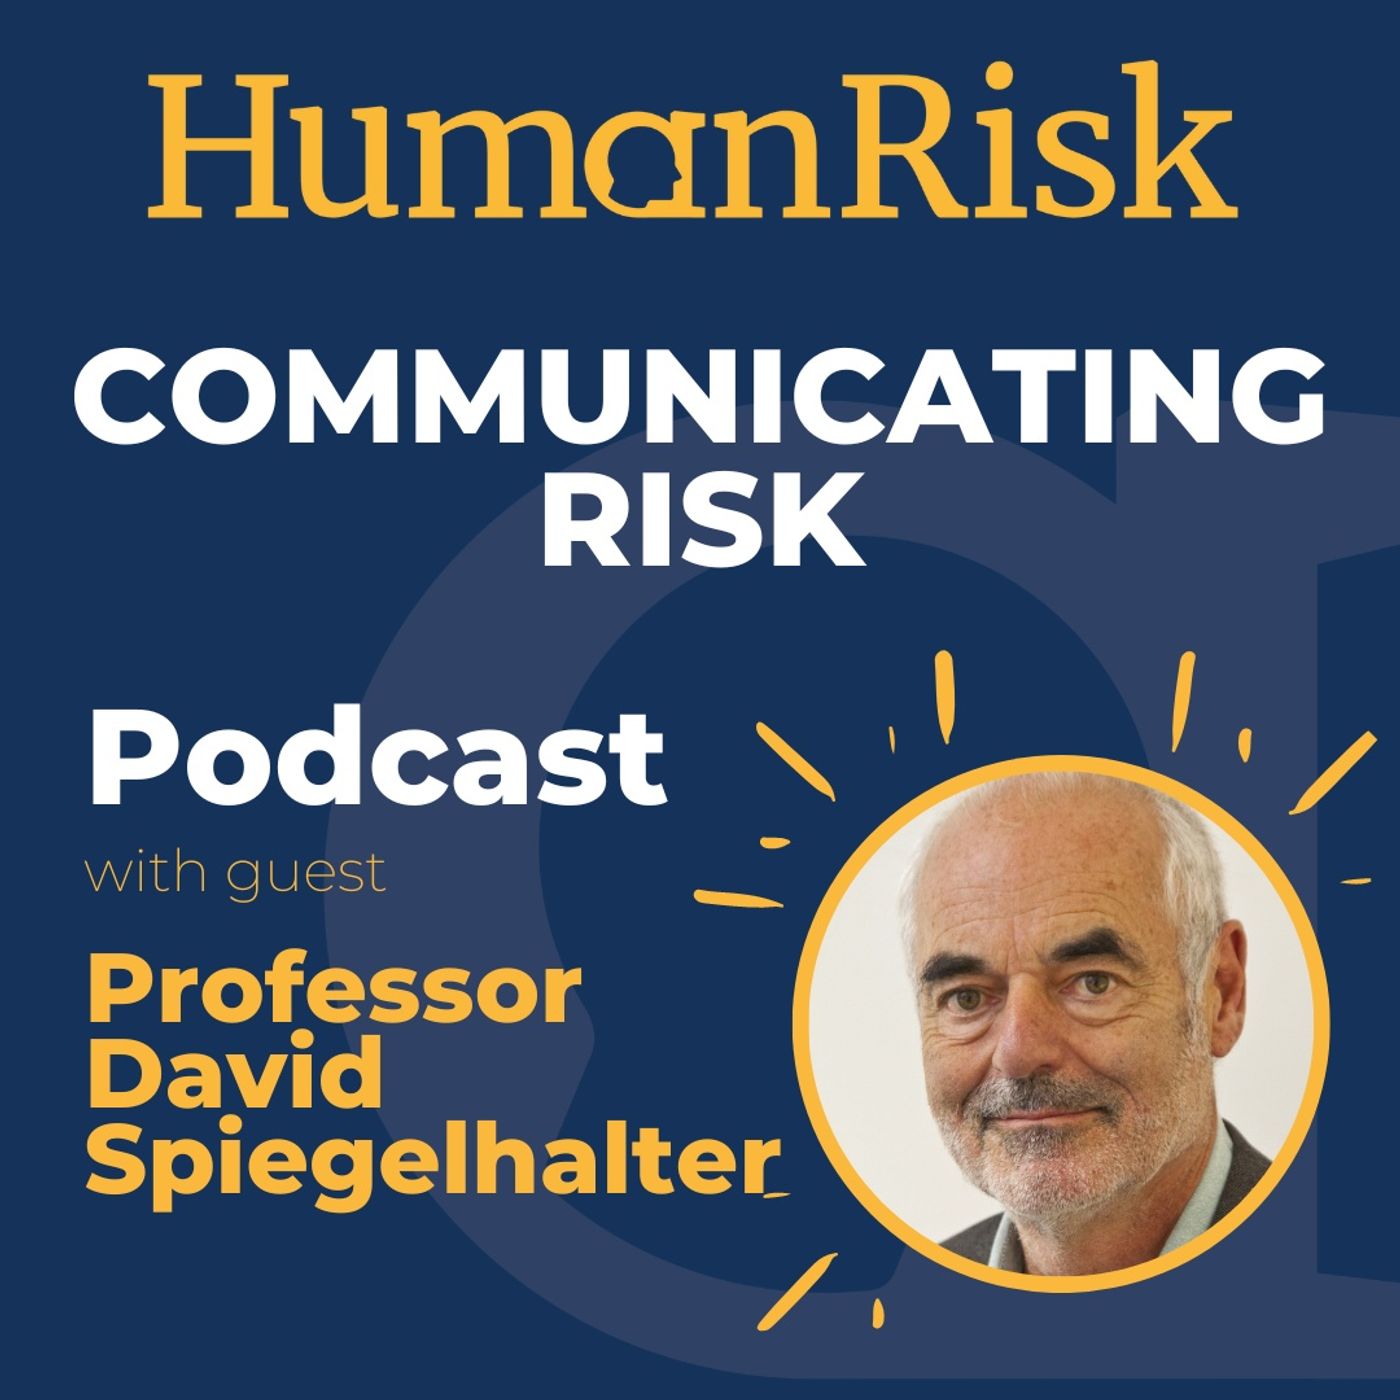 Professor David Spiegelhalter on Communicating Risk